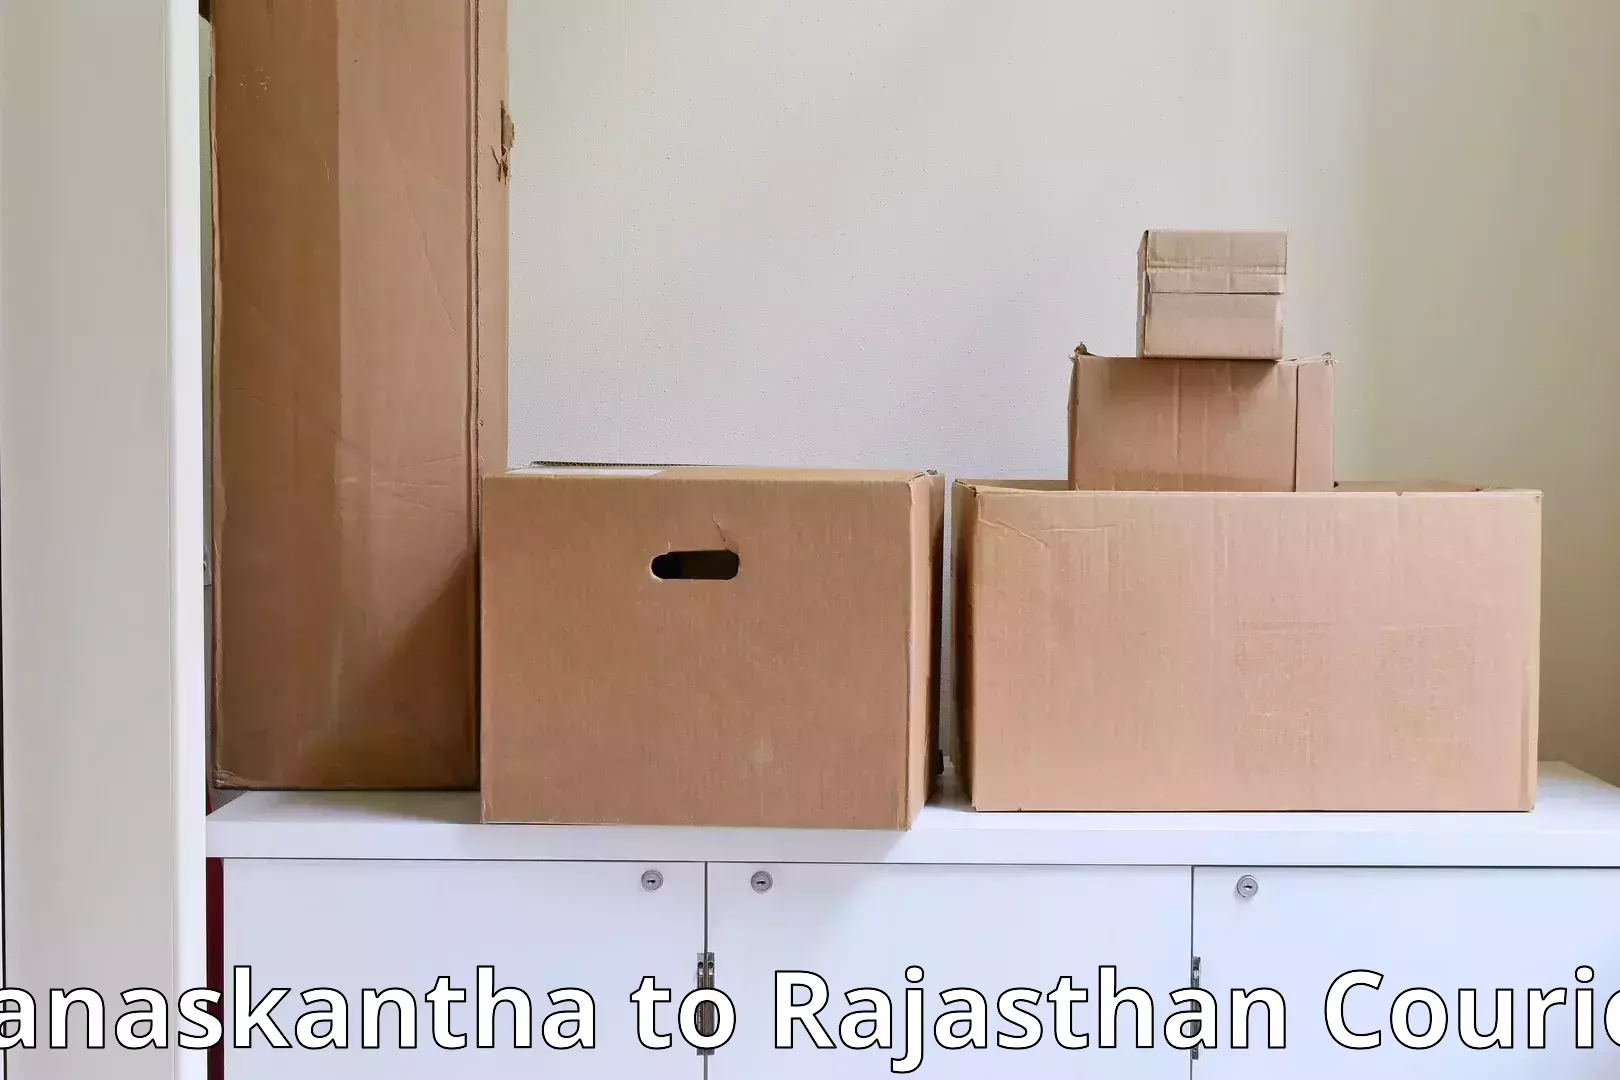 Cost-effective moving options Banaskantha to Viratnagar